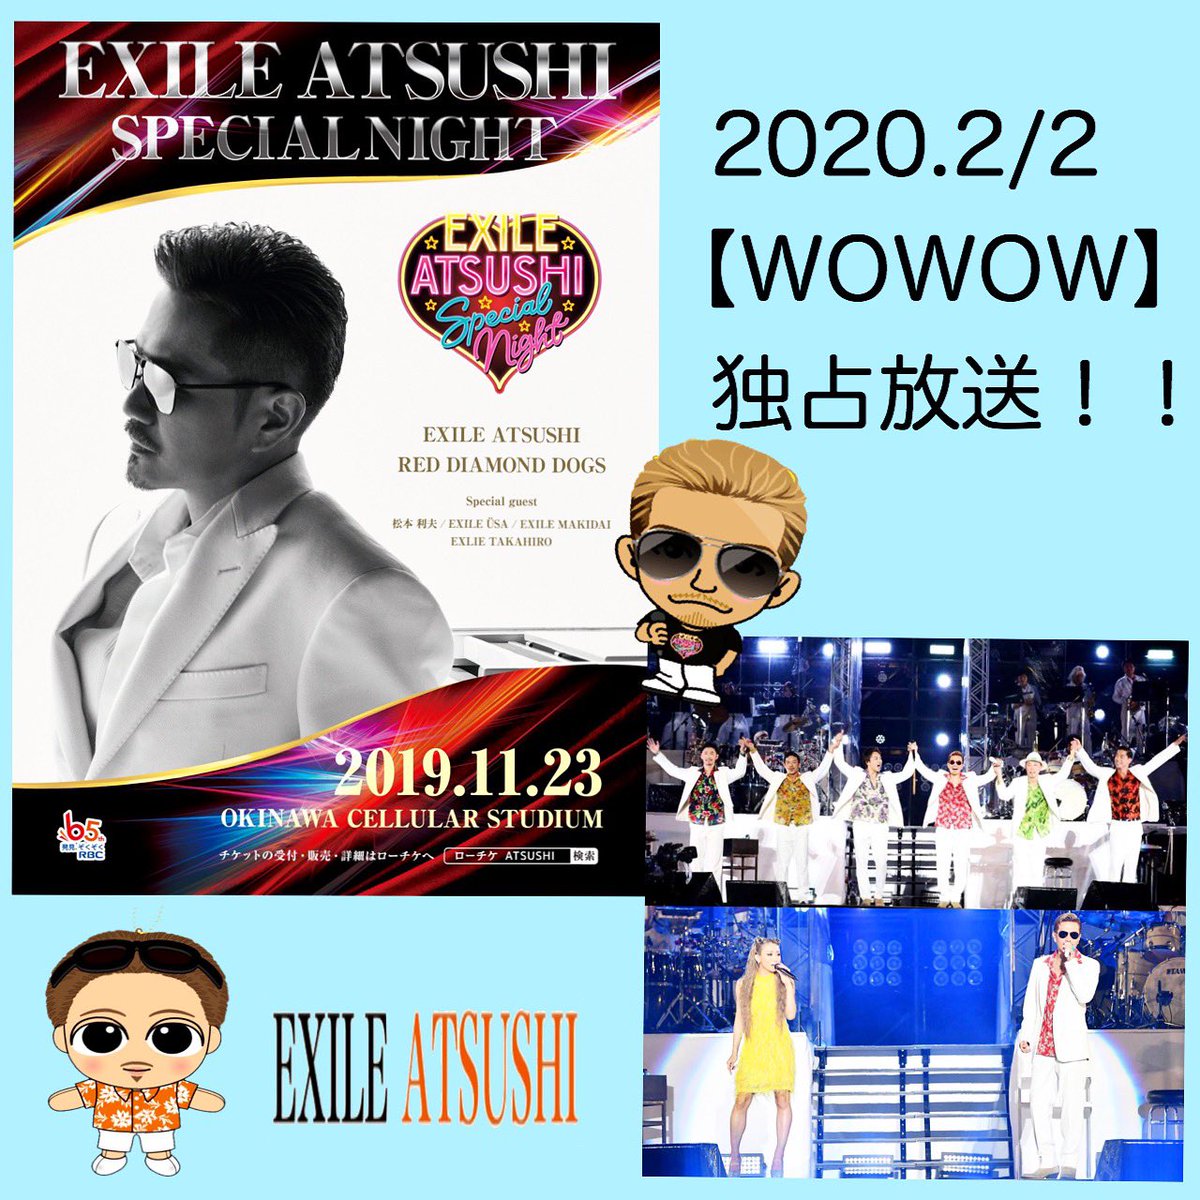 Miarjsb24 On Twitter 沖縄live Wowowで放送されるなんて 嬉しすぎるー Exile 2 2日 Wowow独占放送 Exile Atsushi Special Night In Okinawa セットリスト全曲をもらさずにお届けします Atsushiのライブがテレビで放送されるのは 今回が初